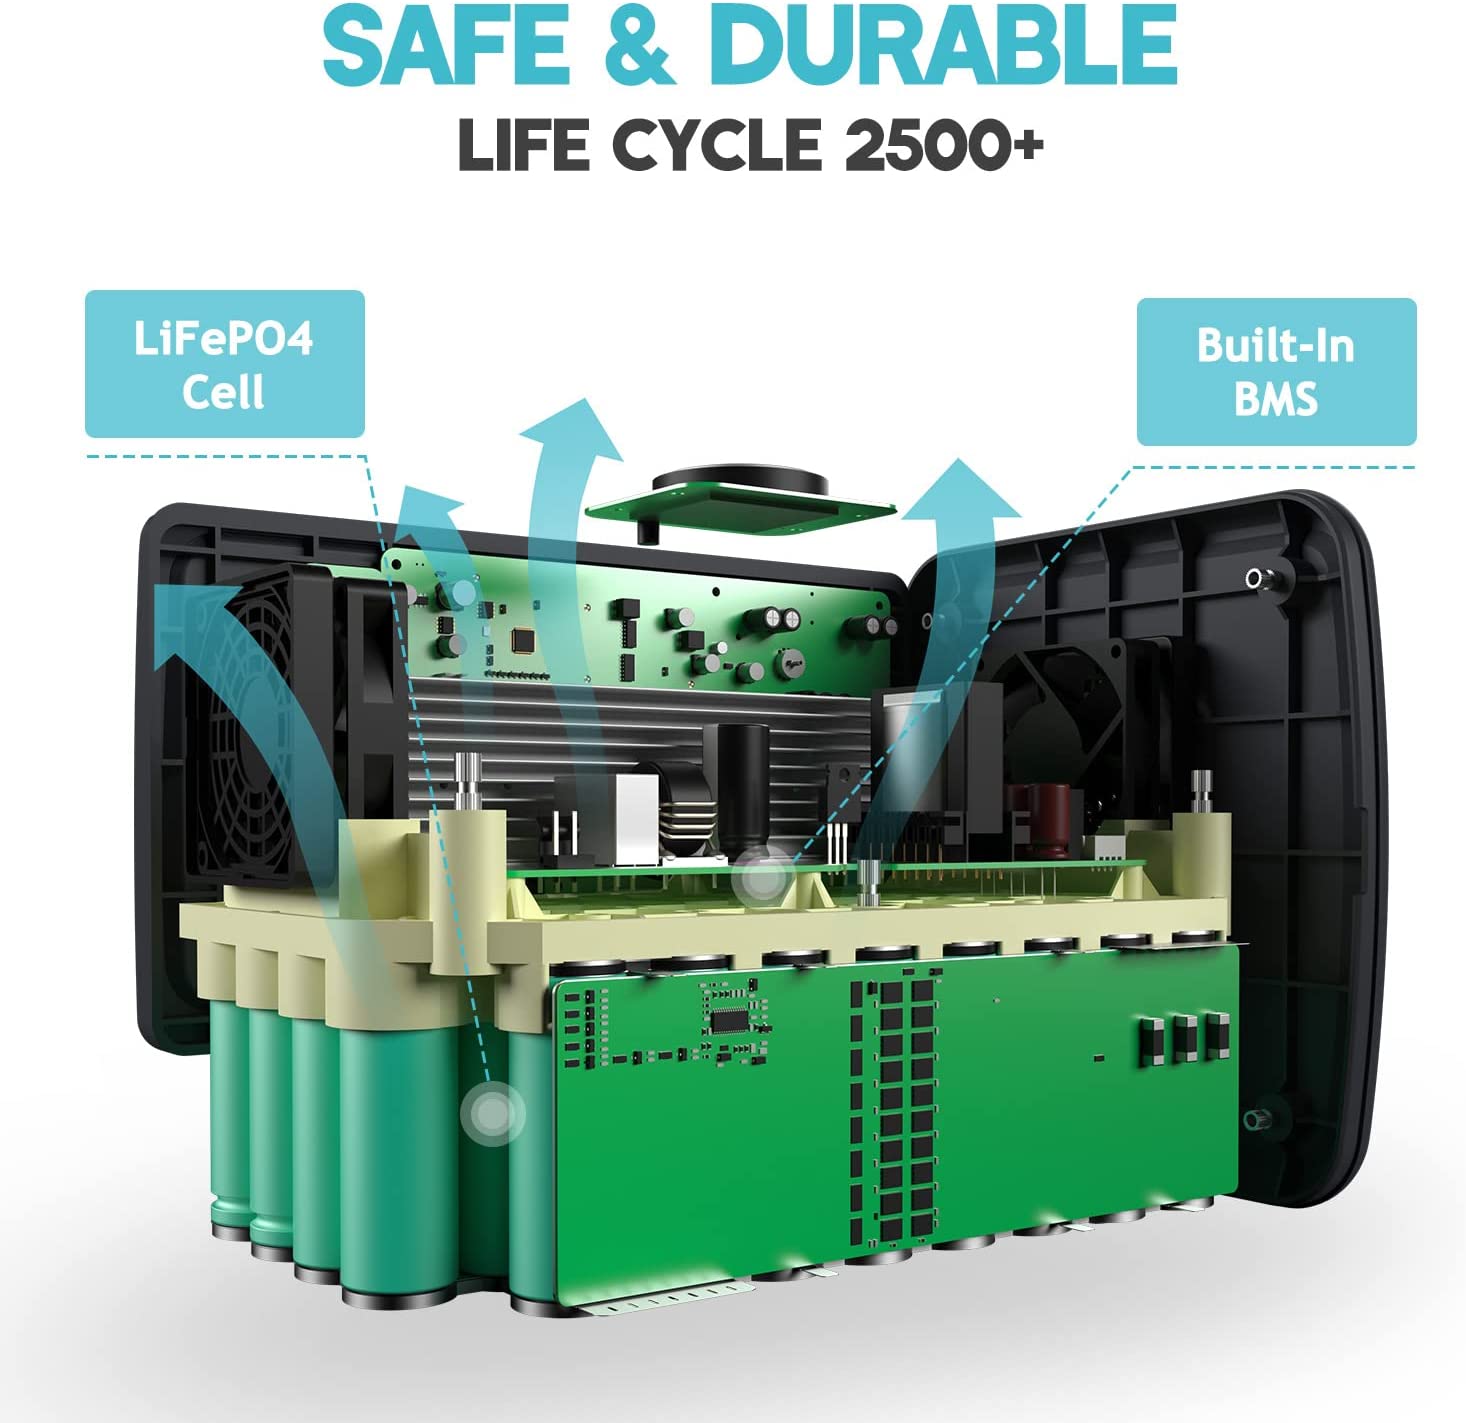 Bateria LifePO4 segura y duradera de sobre 2500 ciclos de vida.